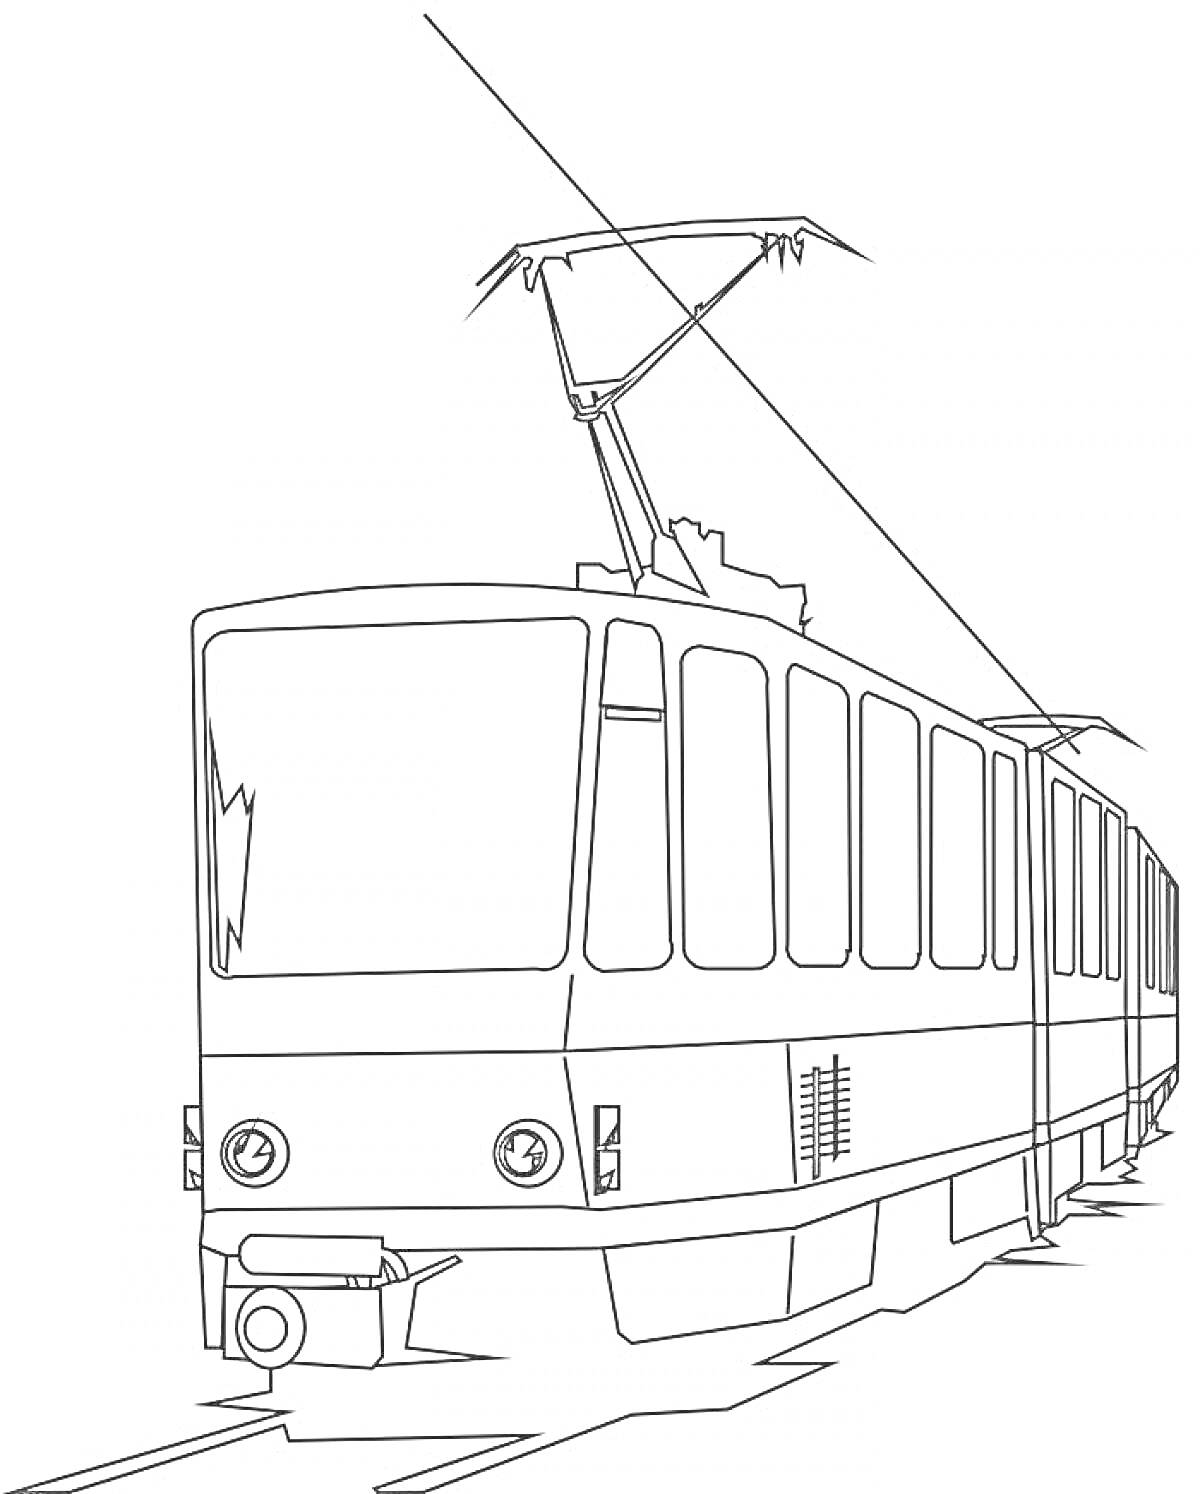 Трамвай на рельсах с контактной сетью и панорамными окнами